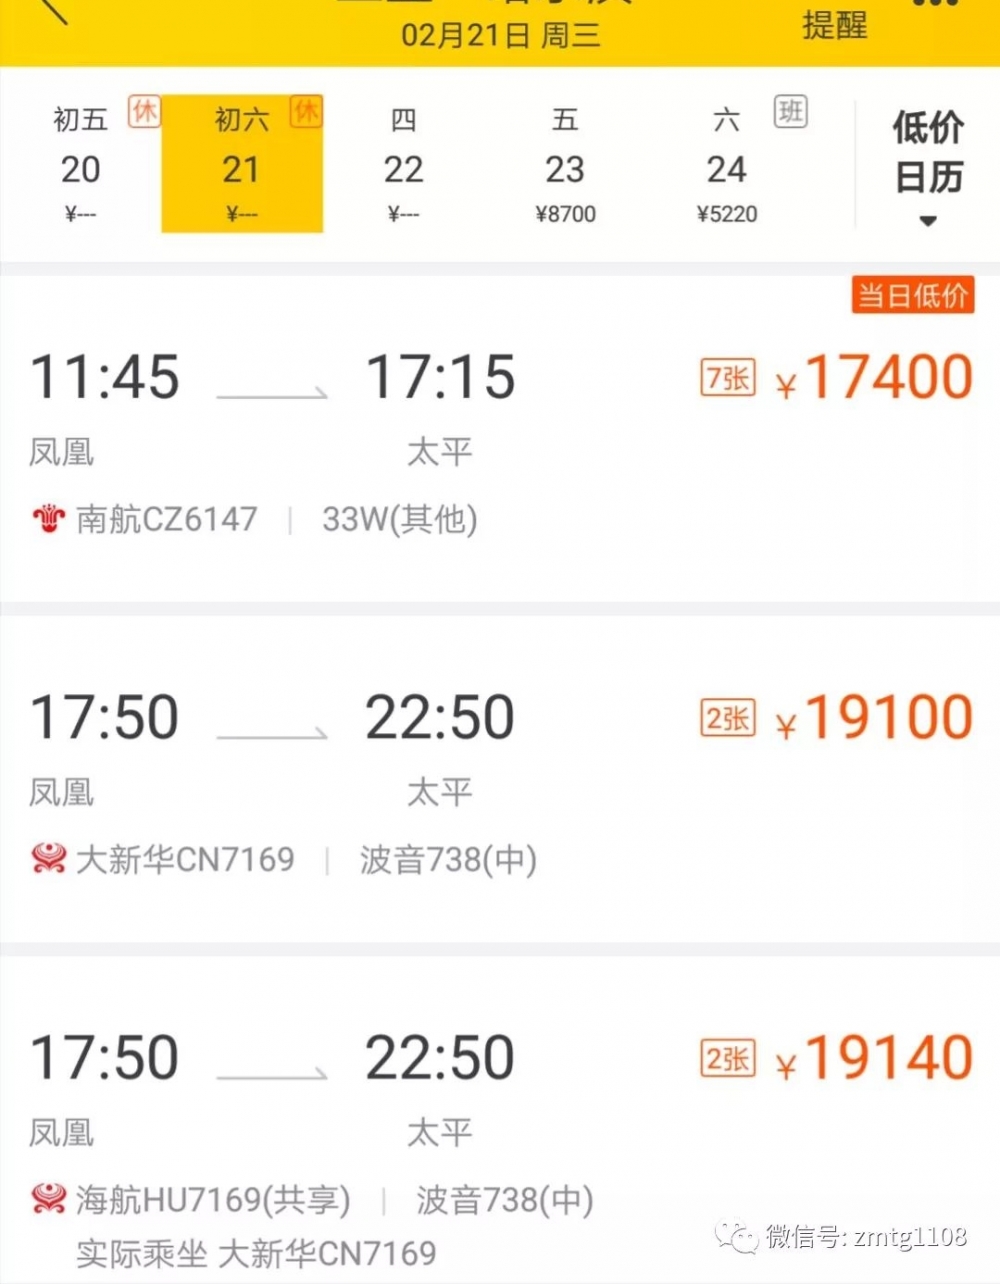 炸了!三亚返京机票暴涨近10倍 返哈尔滨机票高